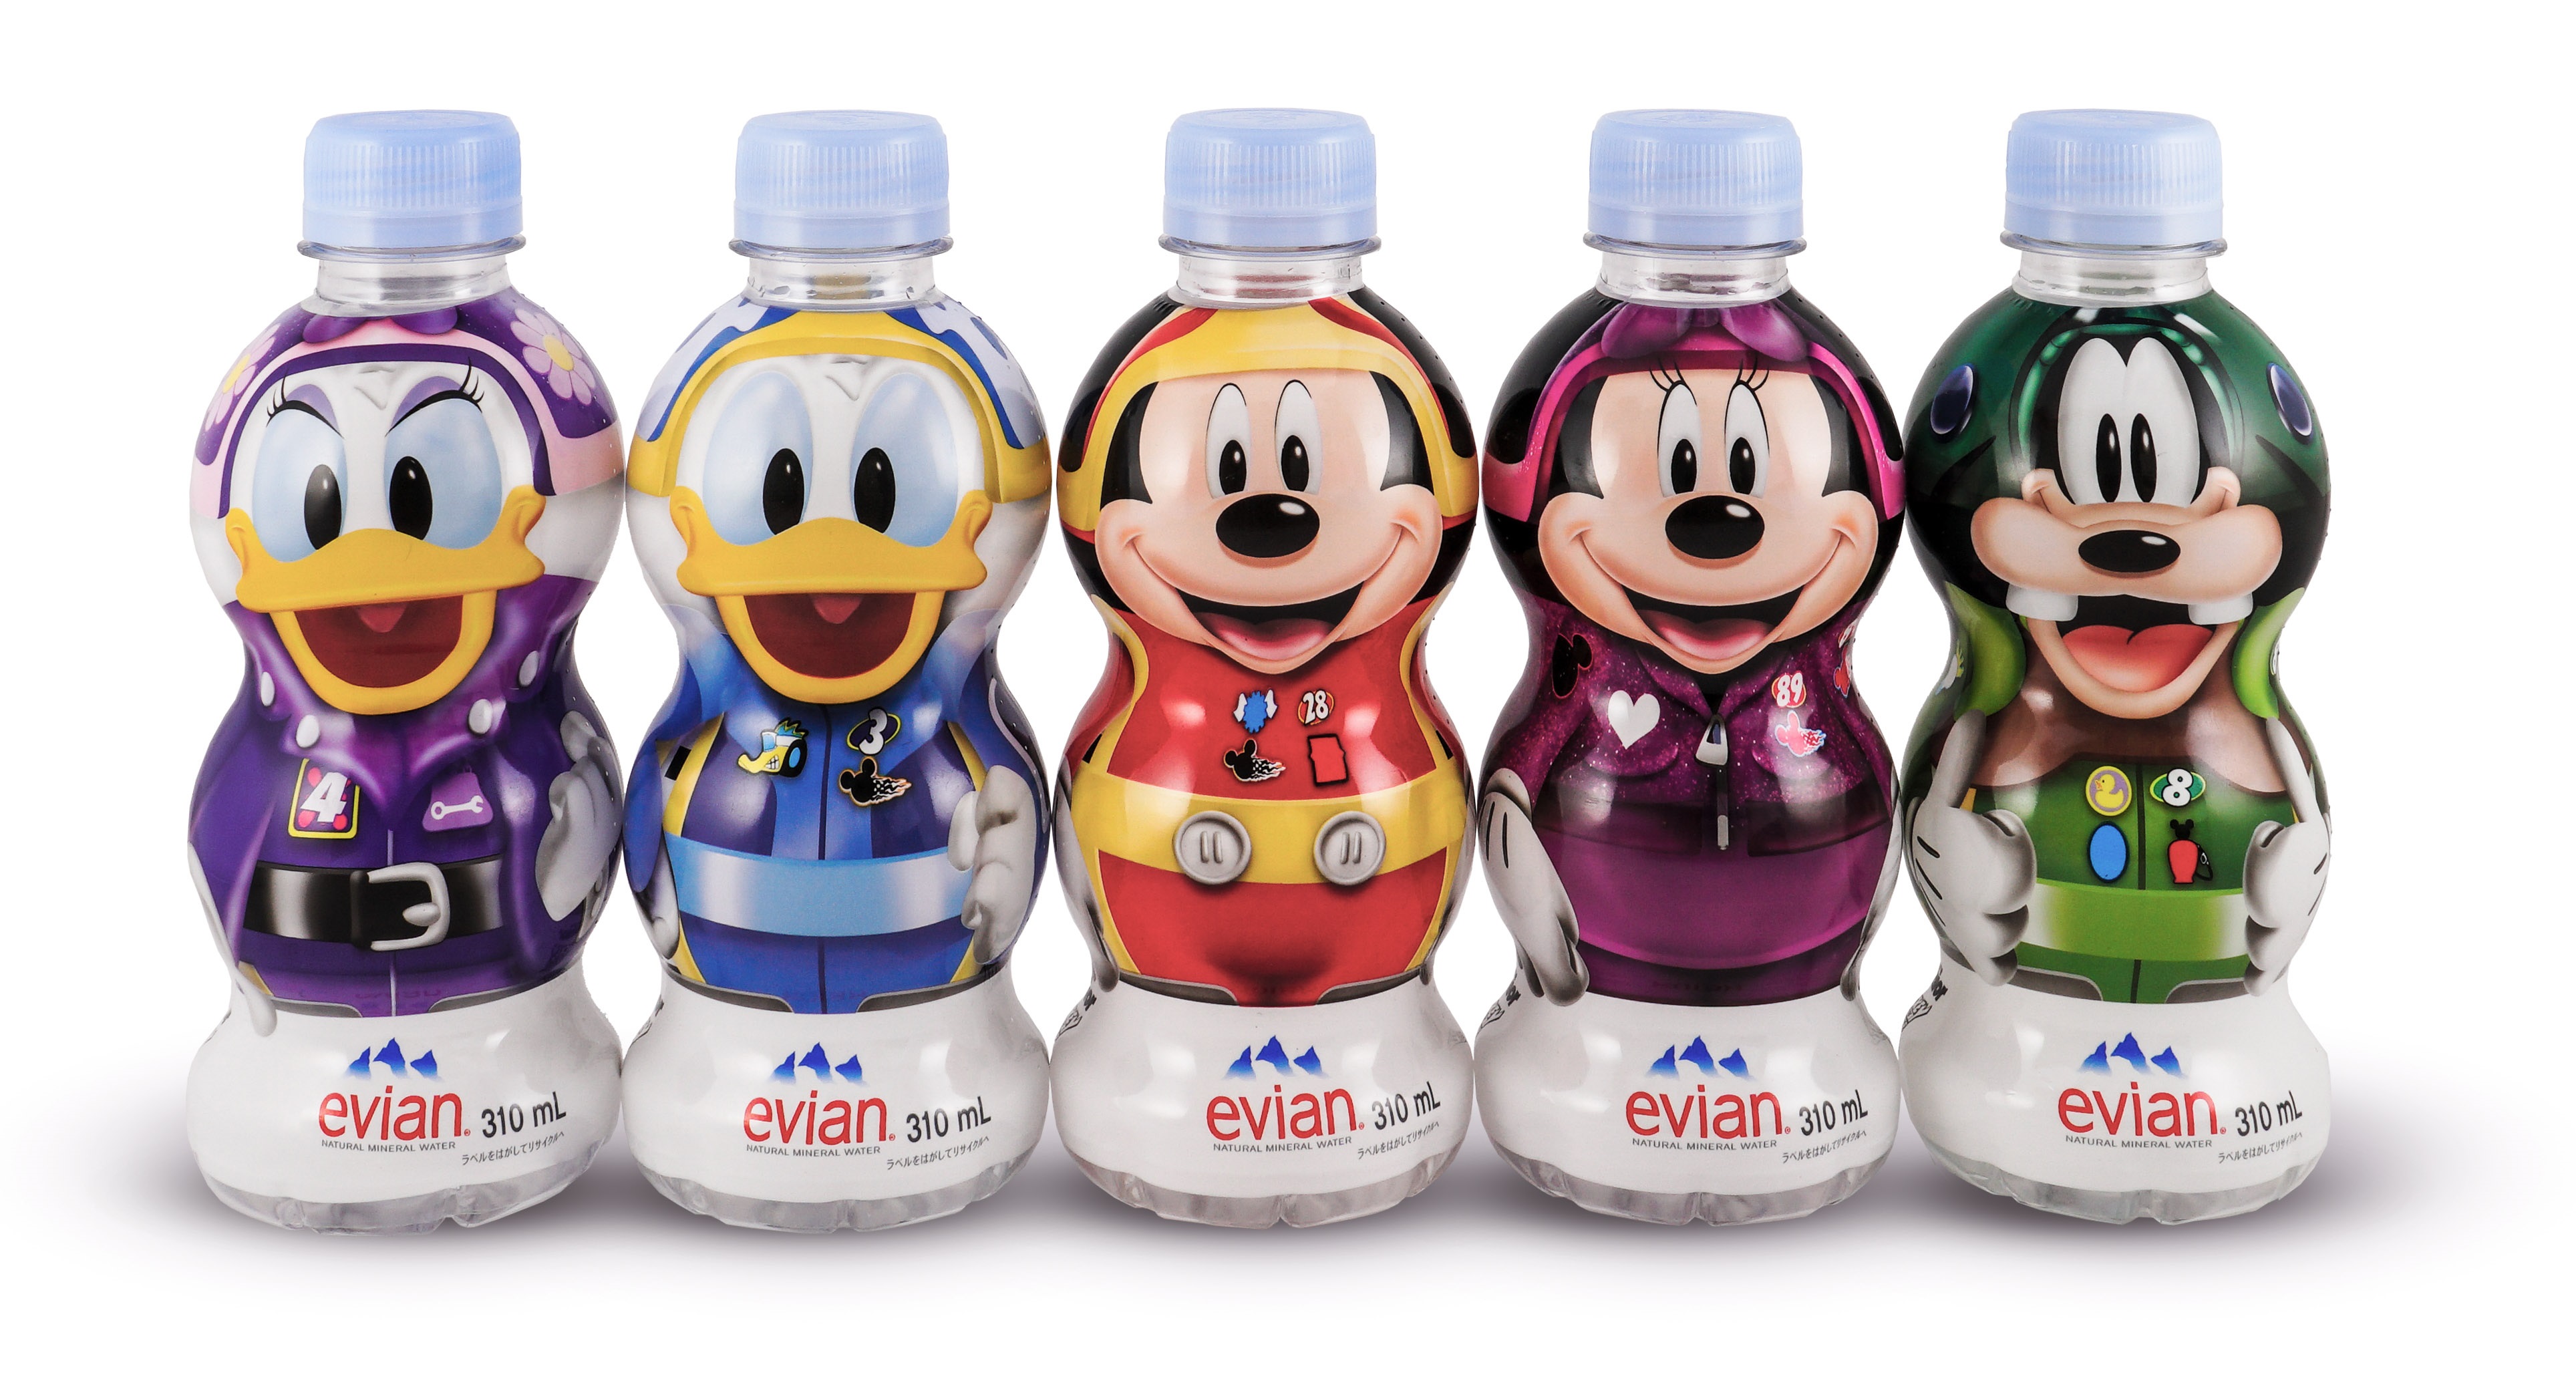 エビアンのディズニーデザインボトルがかわいい 持ち歩きたくなるサイズ感で子ども用の水分補給にも使えます 18年10月28日 エキサイトニュース